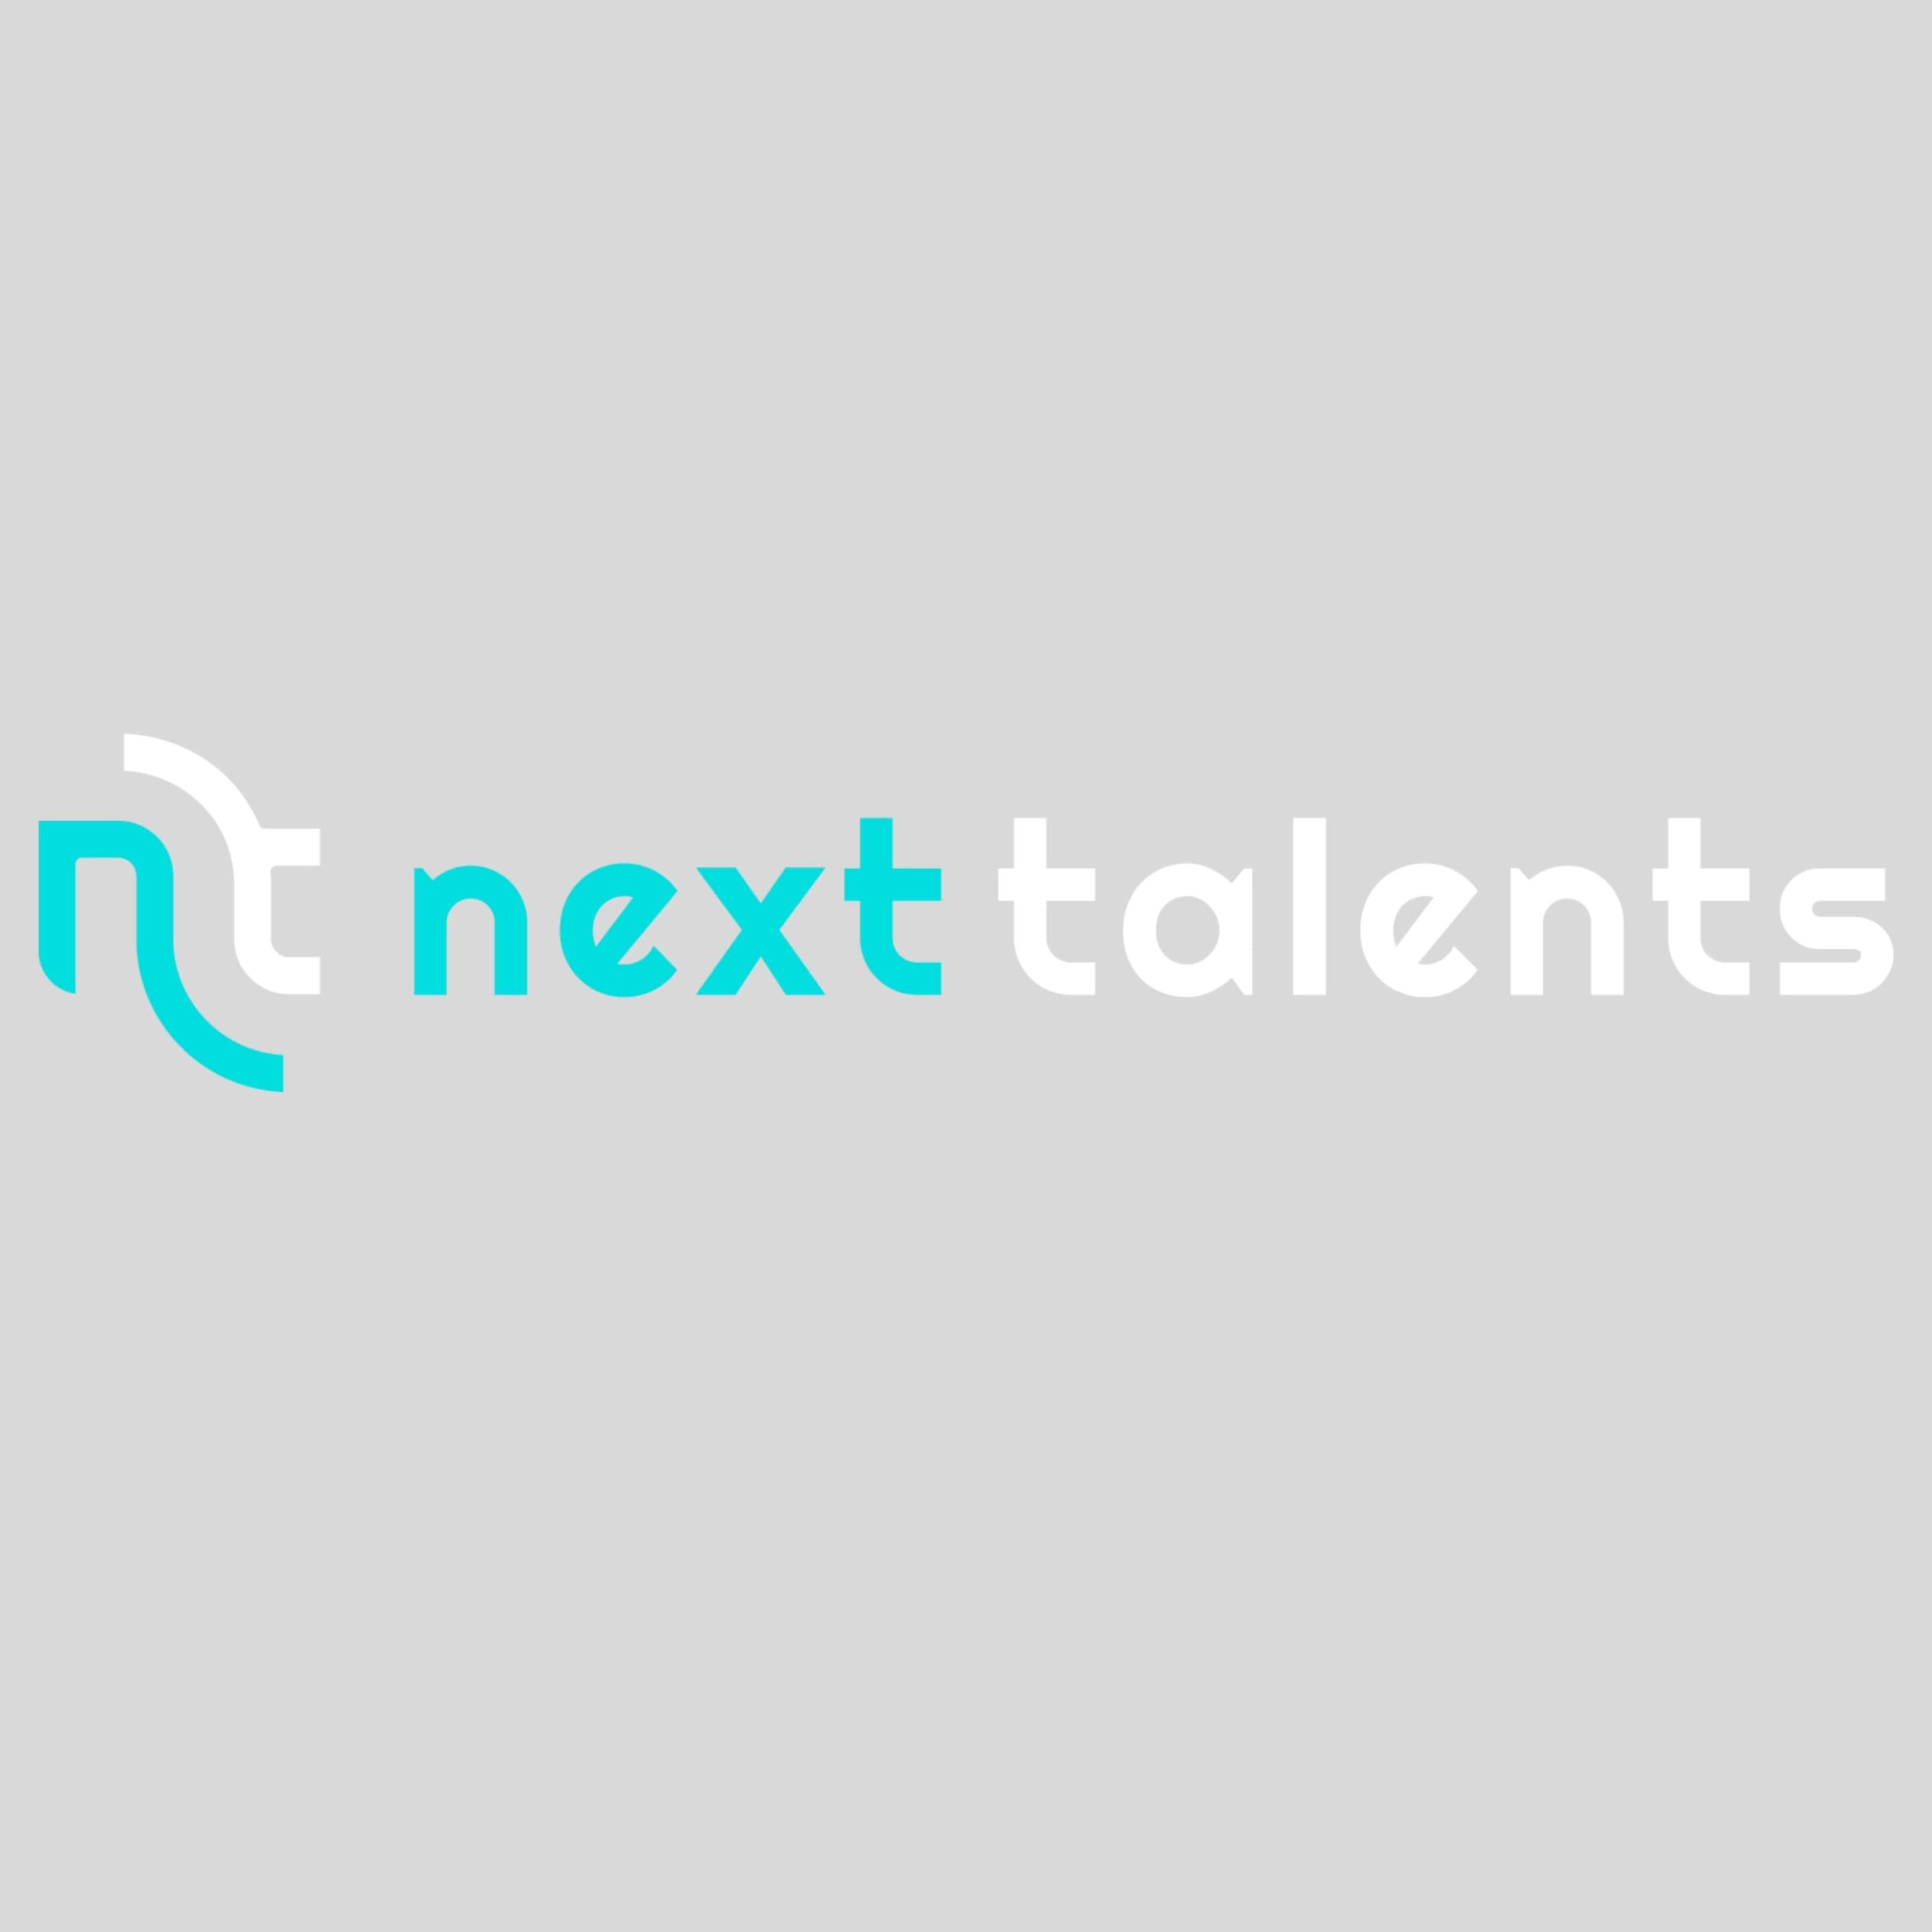 Next Talents